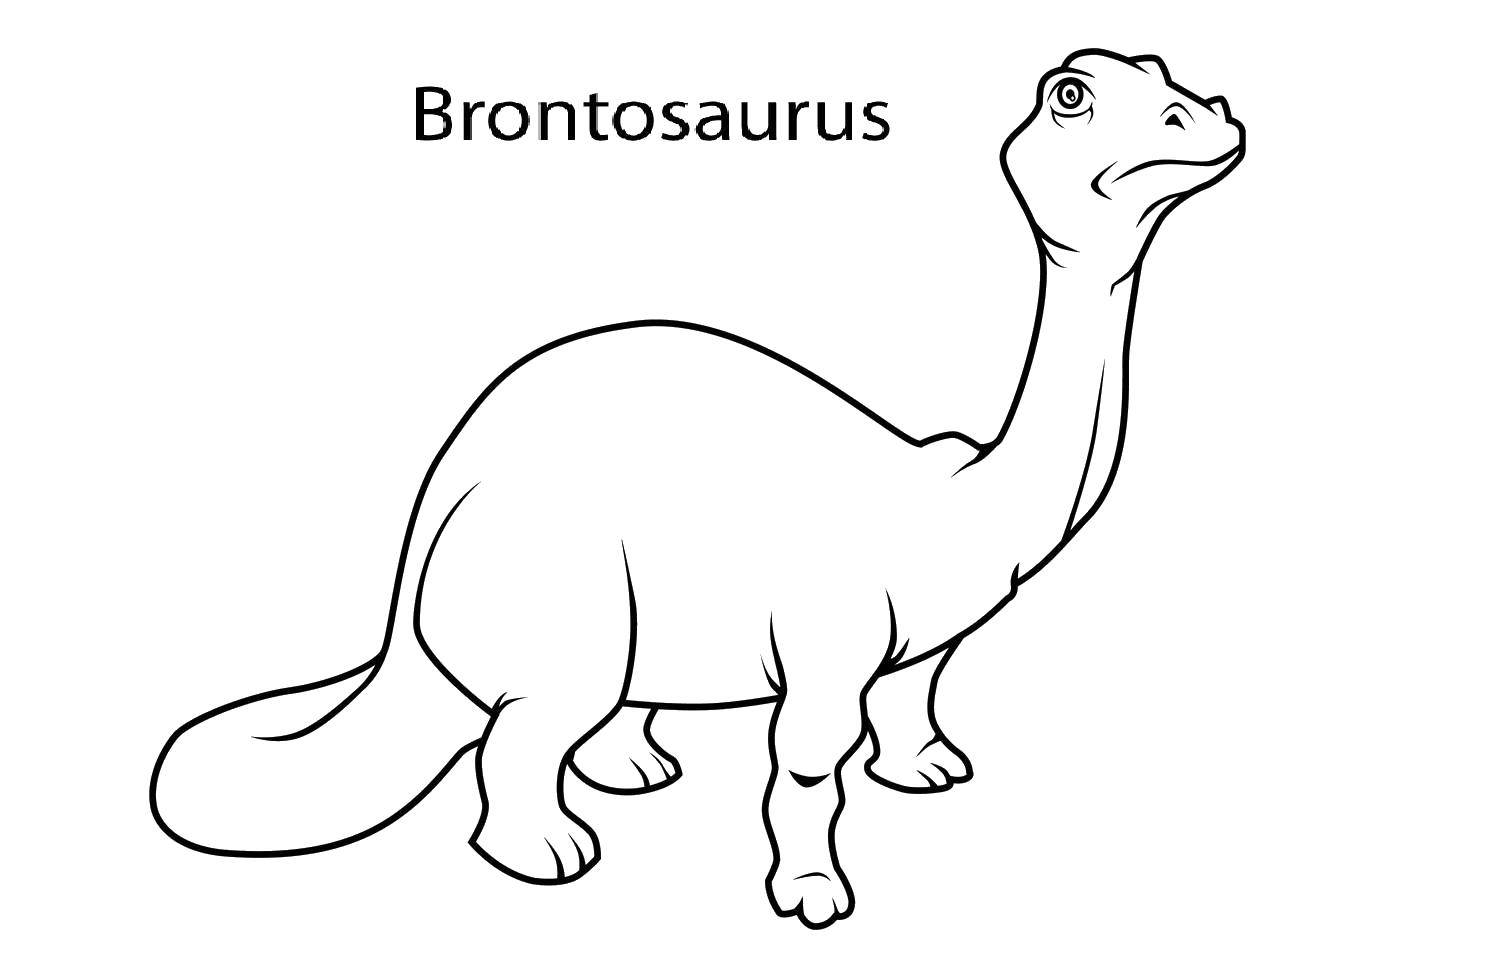 Опис: розмальовки  Бронтозавр. Категорія: динозавр. Теги:  Динозаври, бронтозавр.